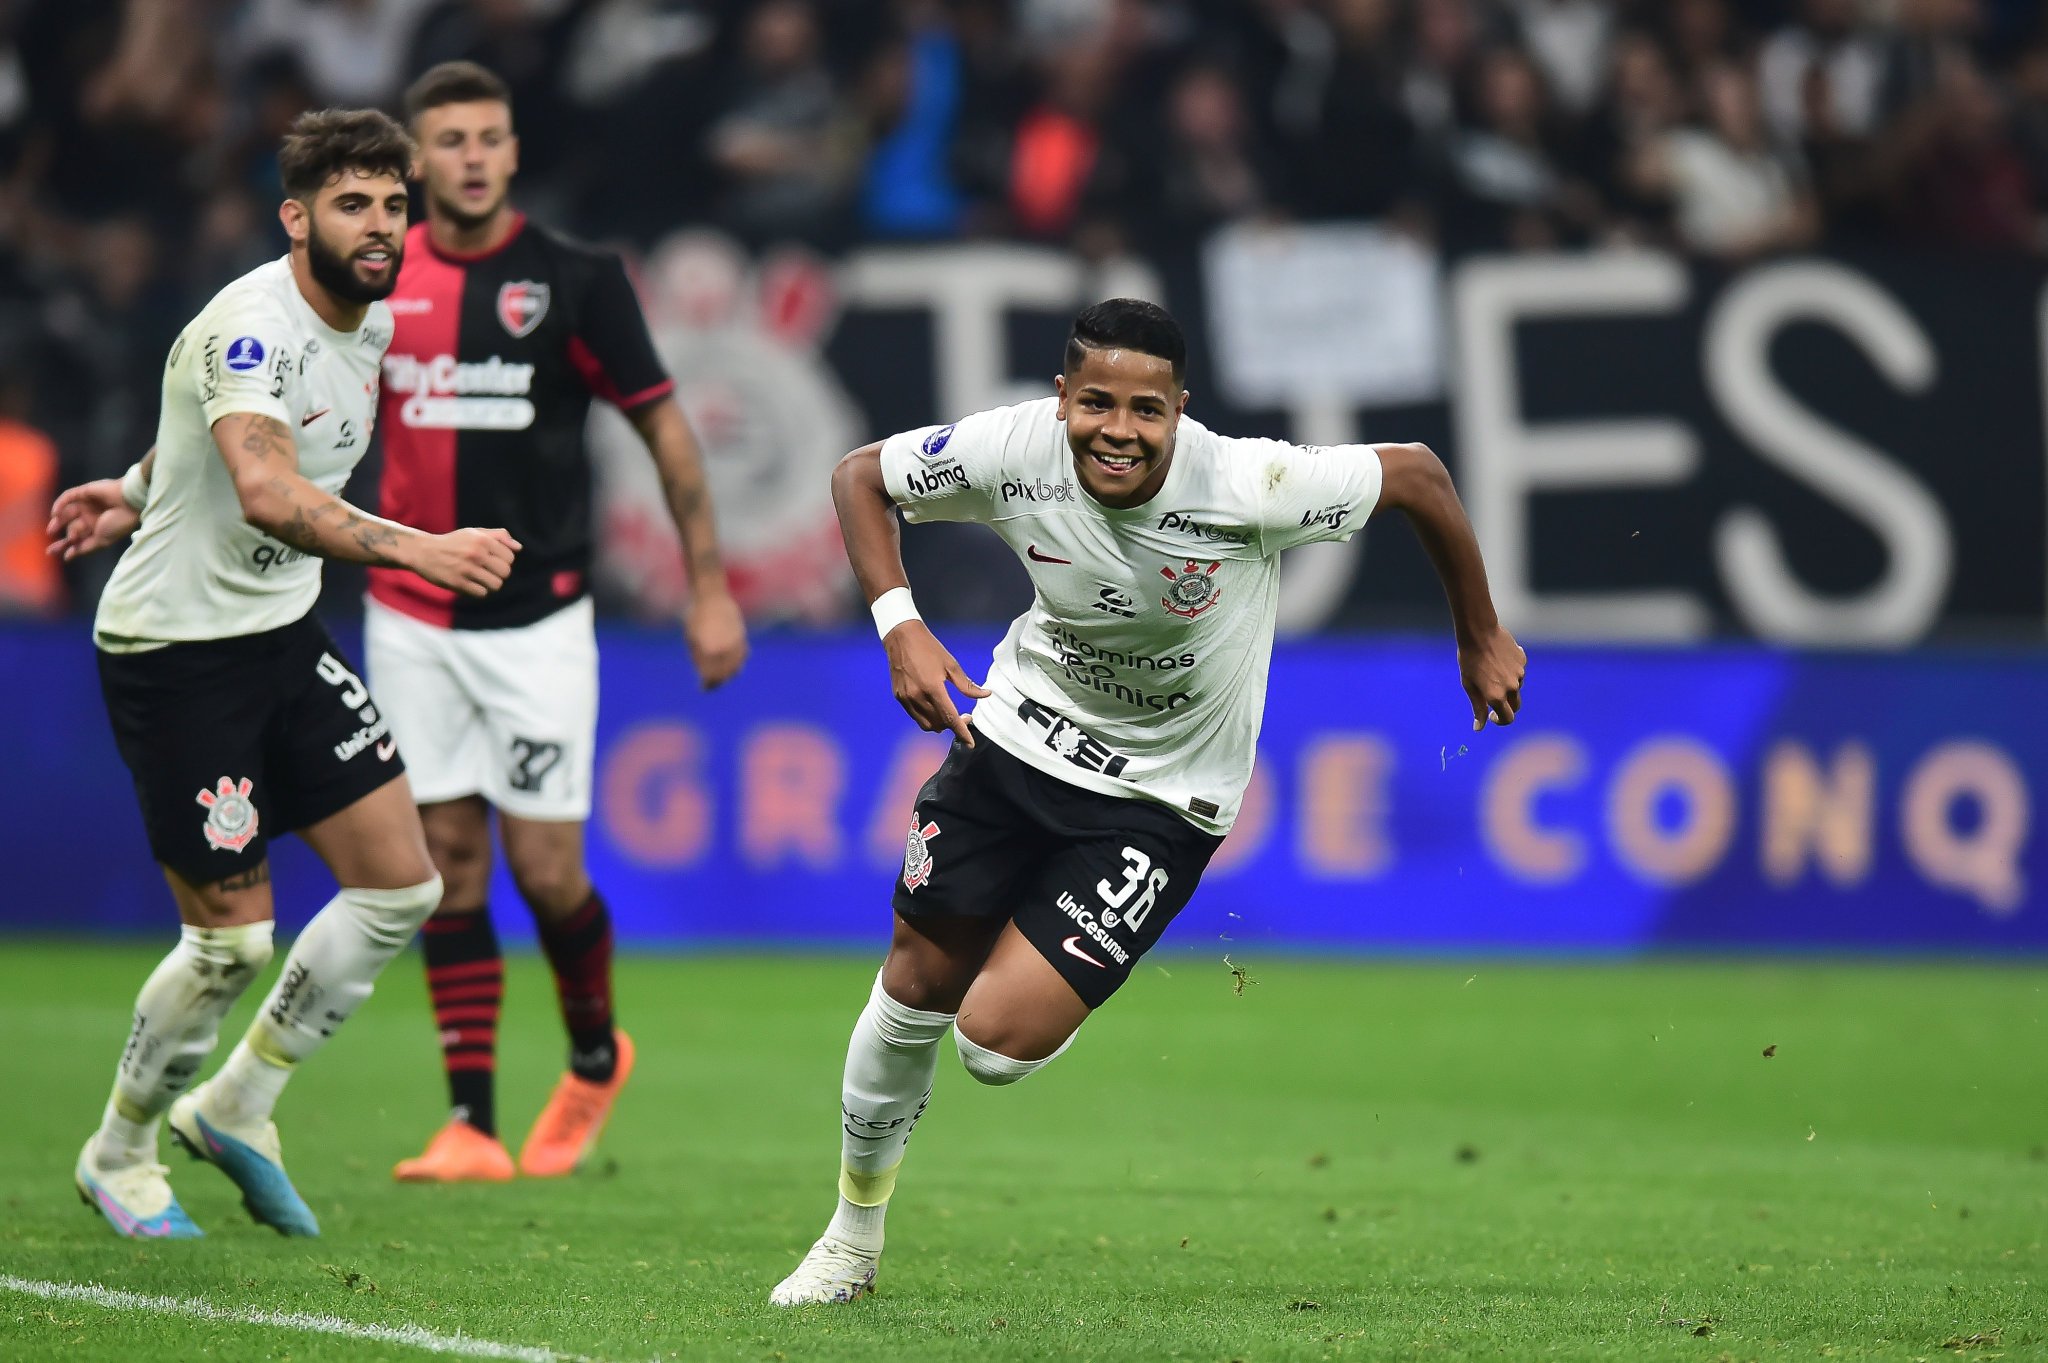 Santos busca empate com Botafogo no fim e amplia sequência invicta